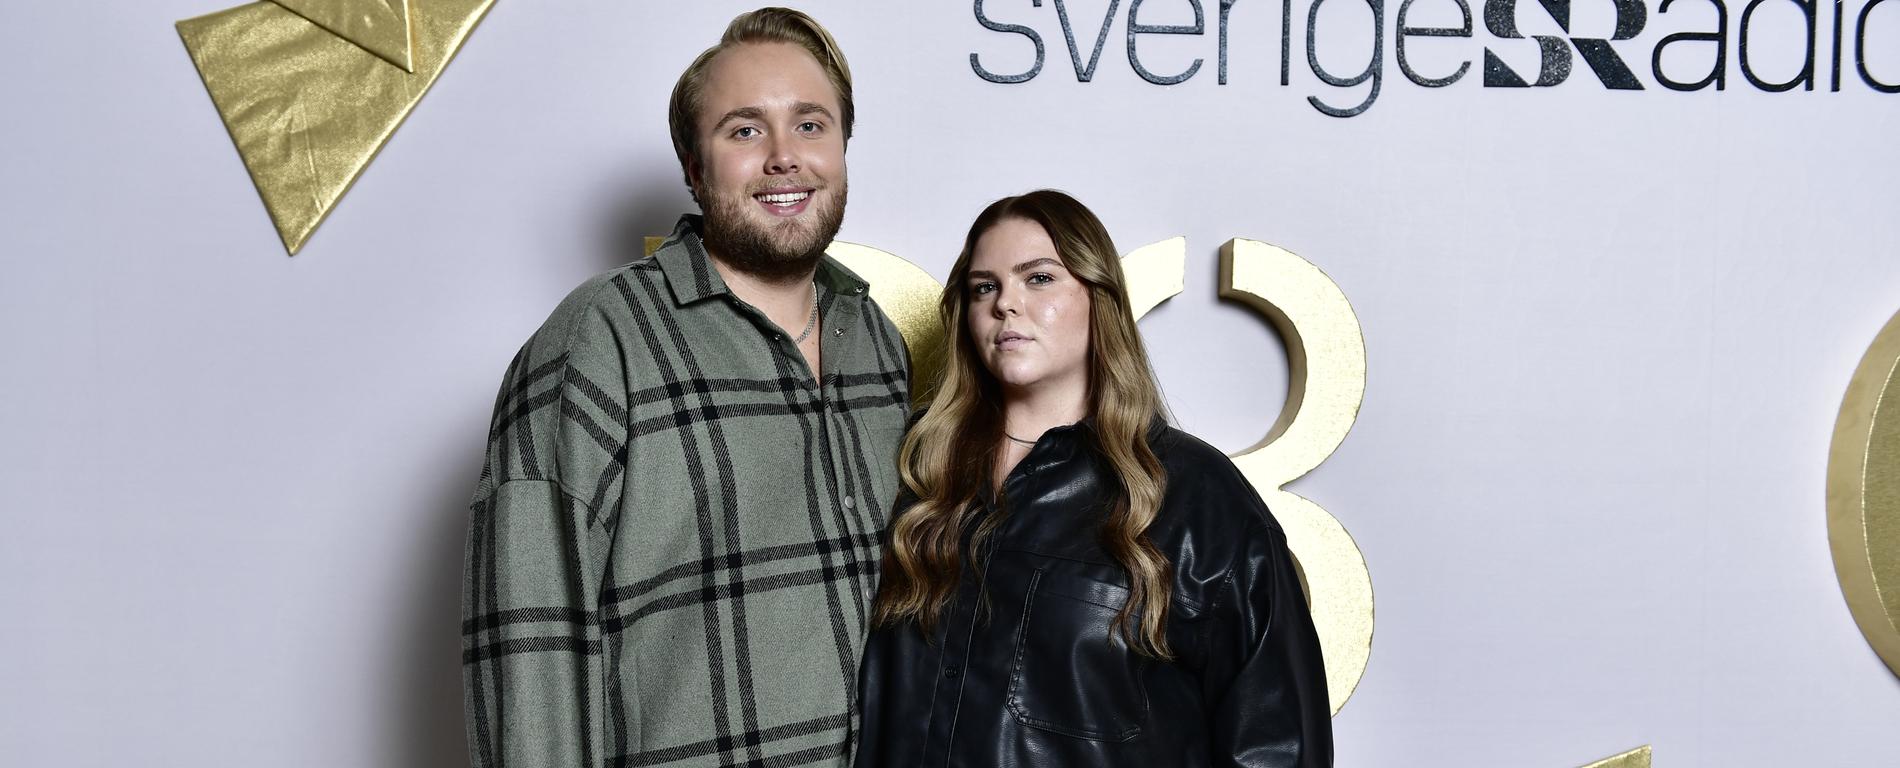 Edvin Törnblom och Johanna Nordström har podden ”Ursäkta!” ihop.